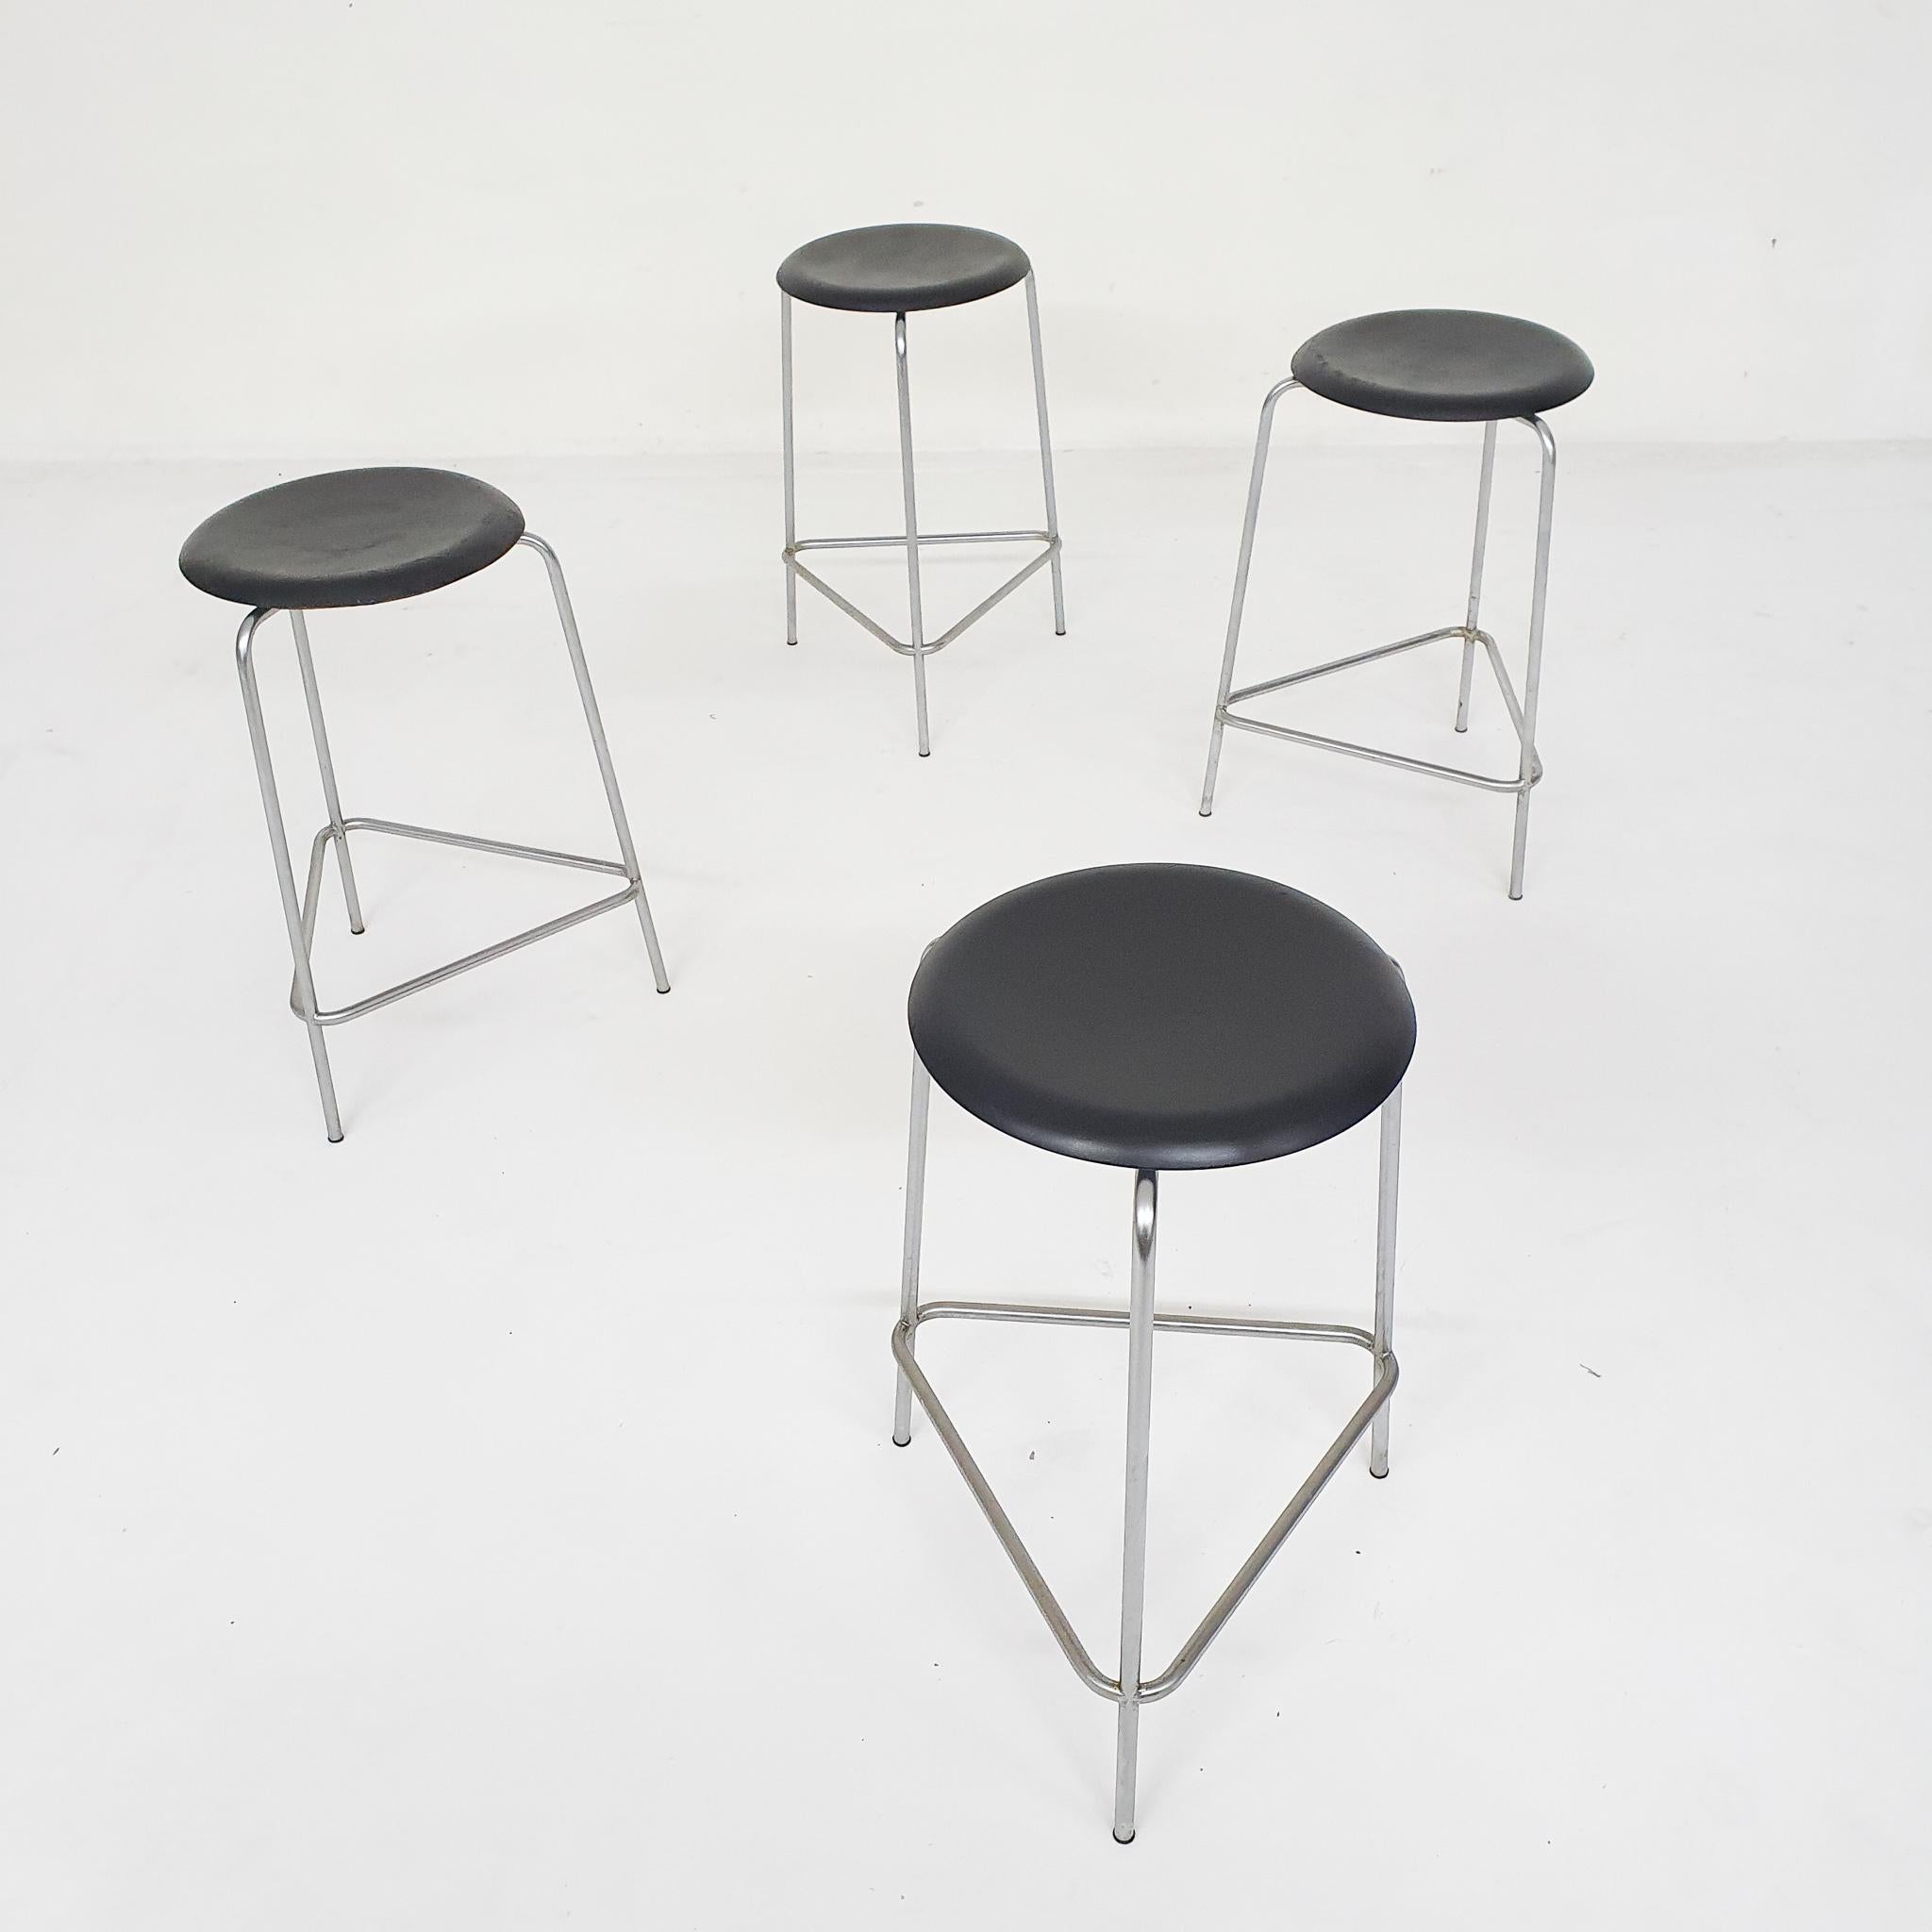 Metal stools designed by Arne Jacobsen for Fritz Hansen in 1967.
Model 